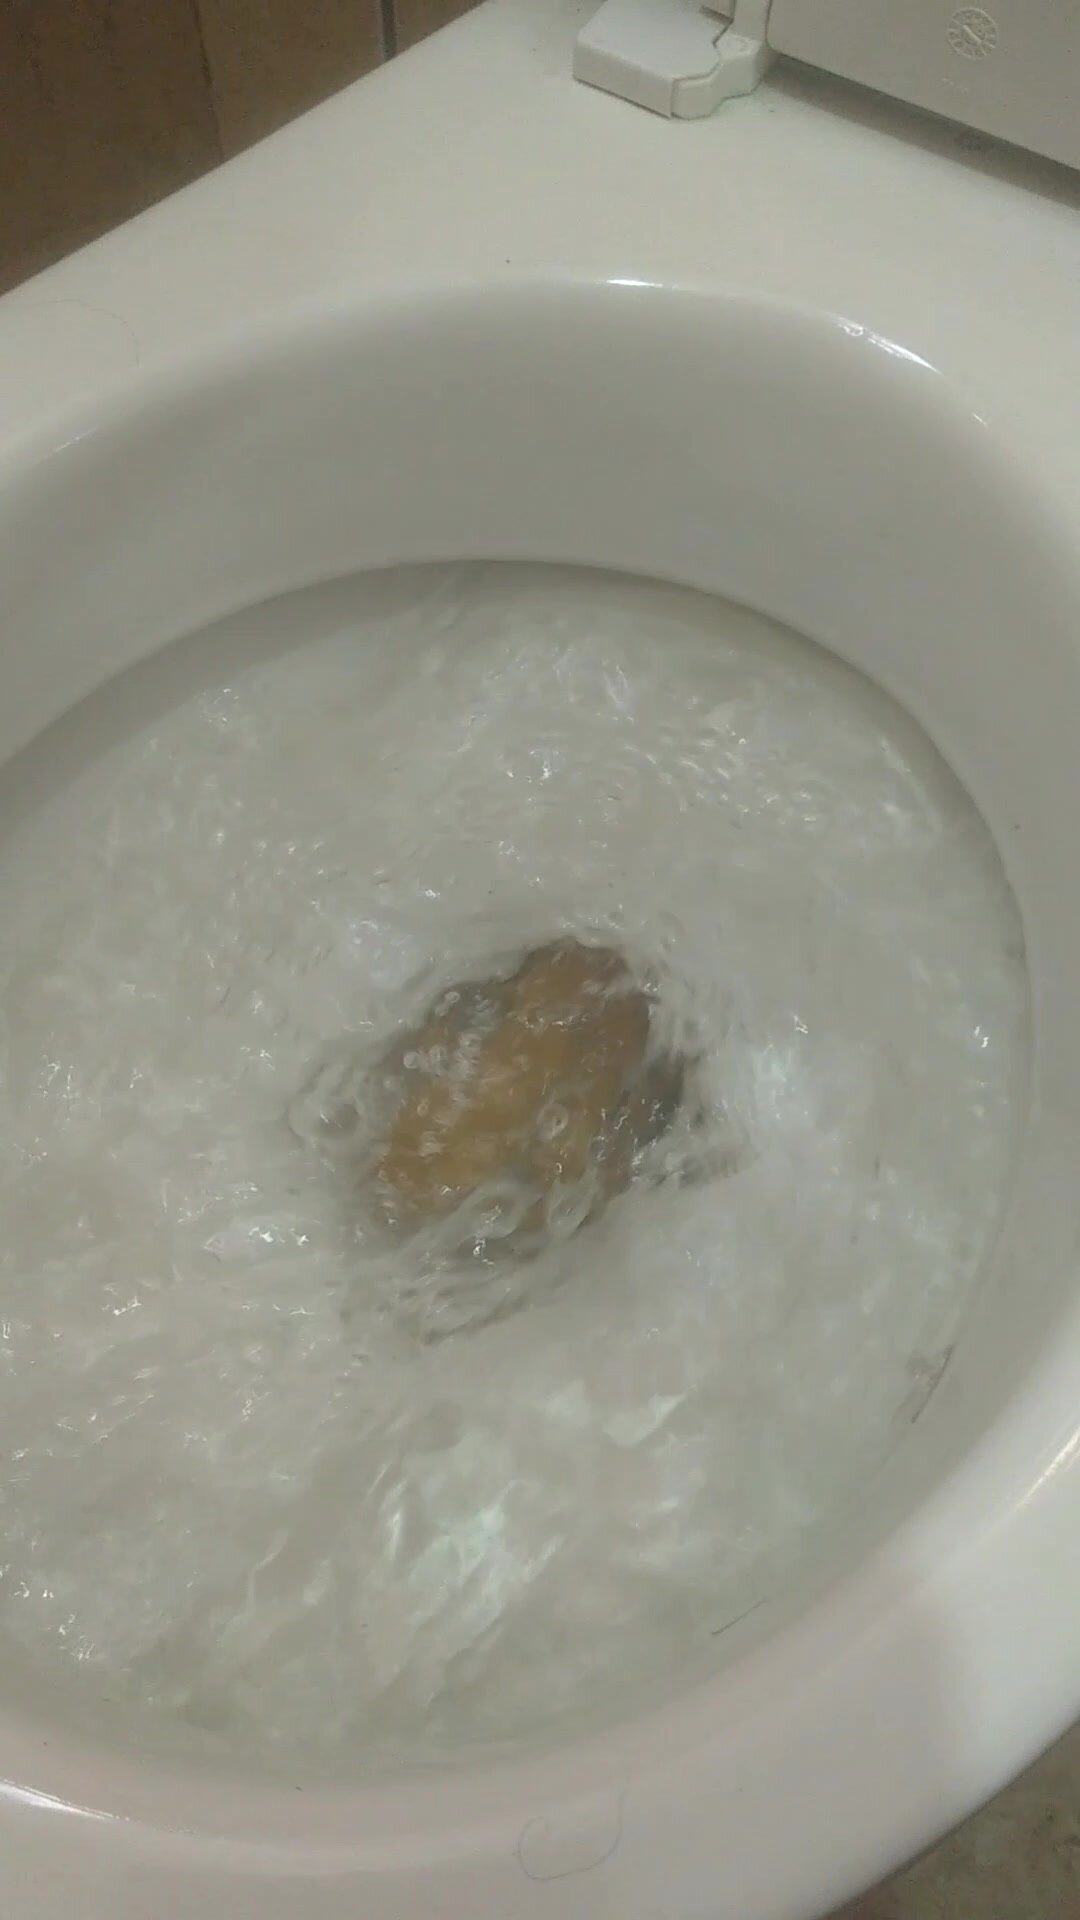 Large poop almost clogs my toilet